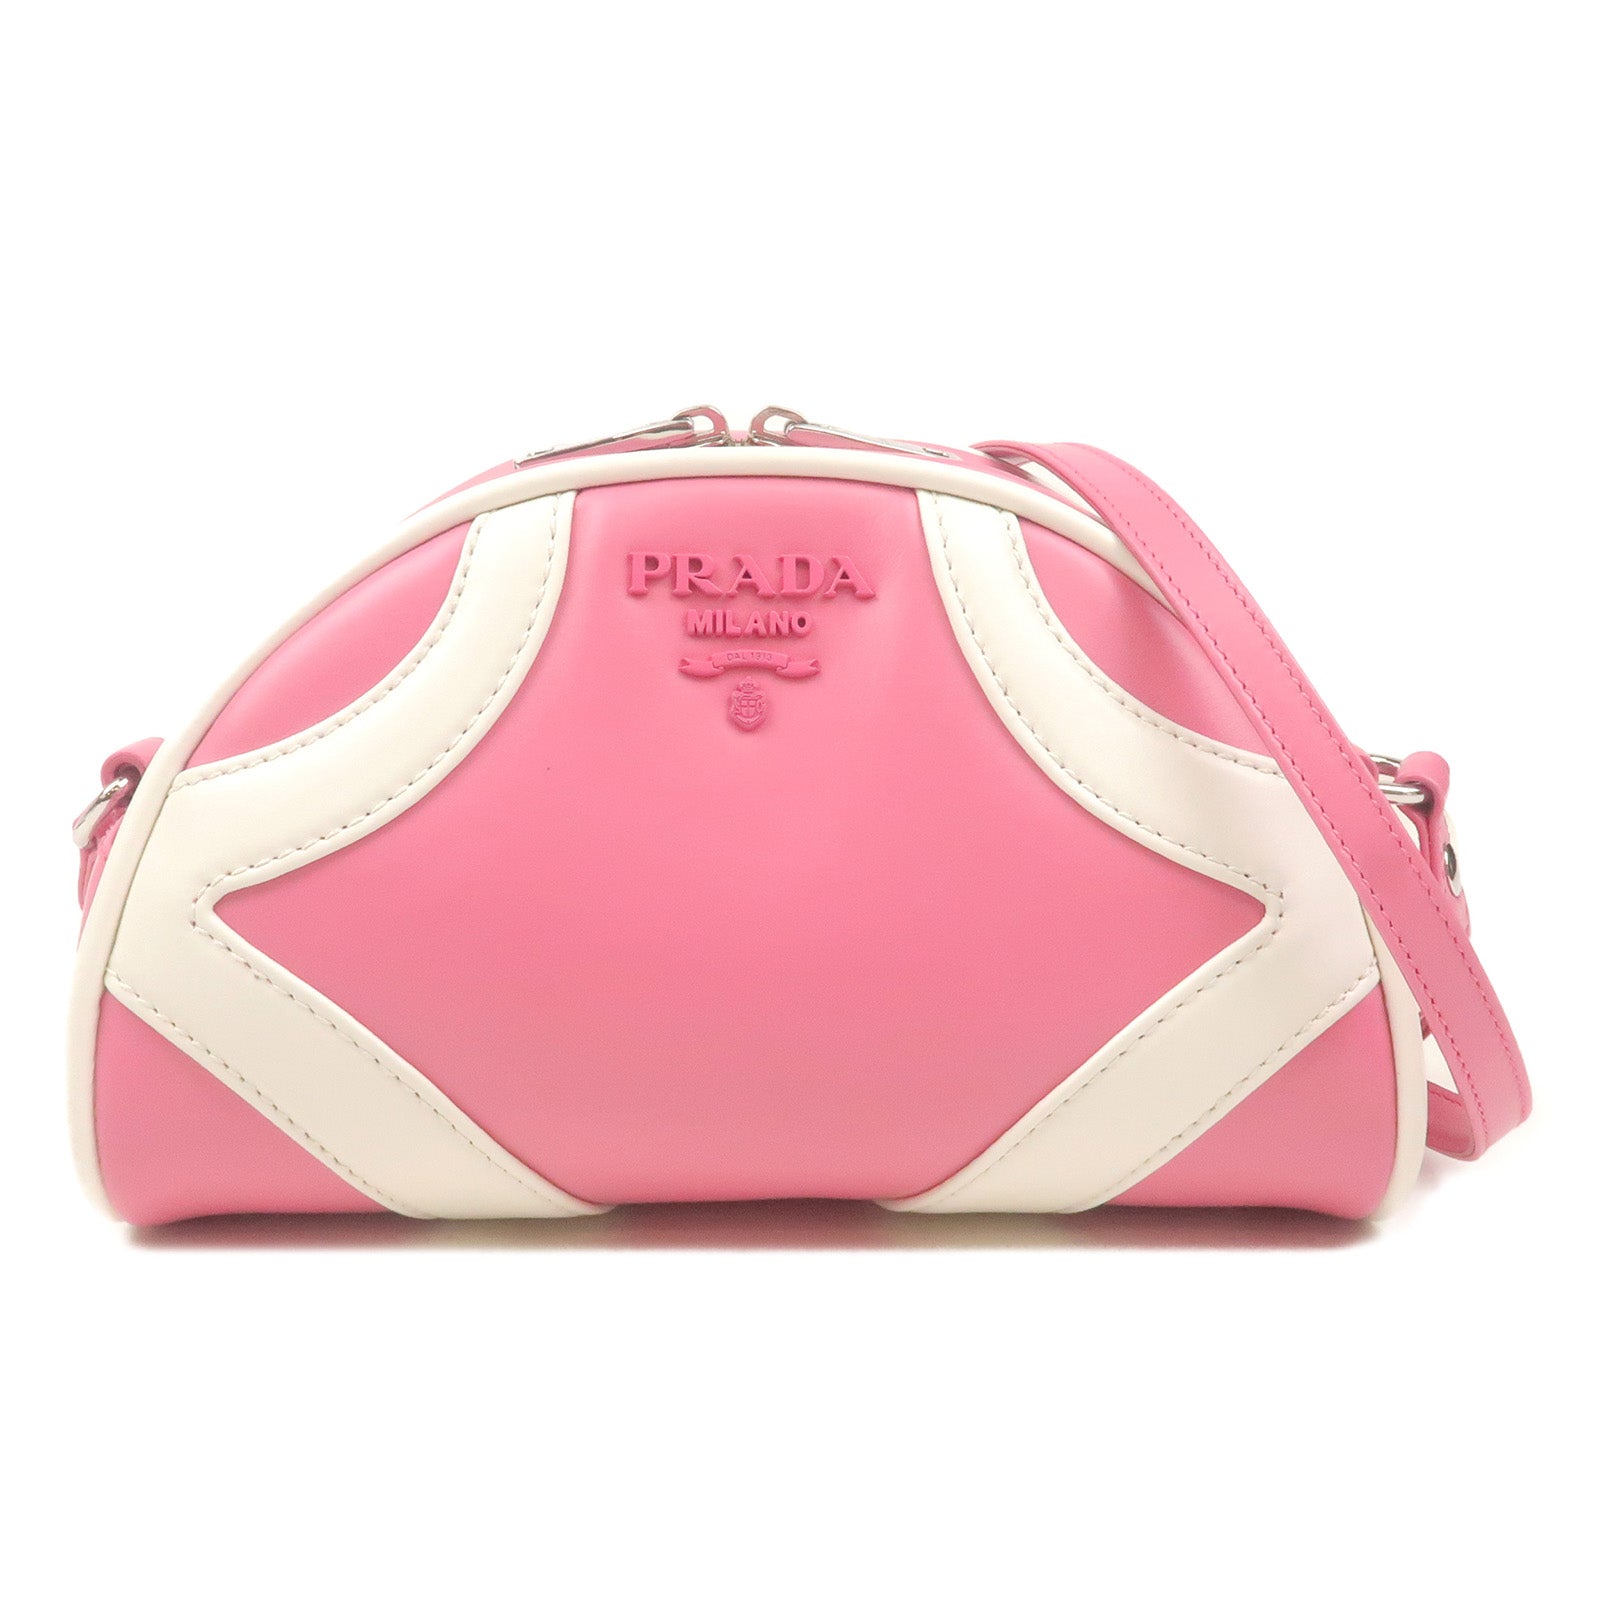 PRADA-Leather-Shoulder-Bag-BEGONIA-BIAN-Pink-White-1BH140